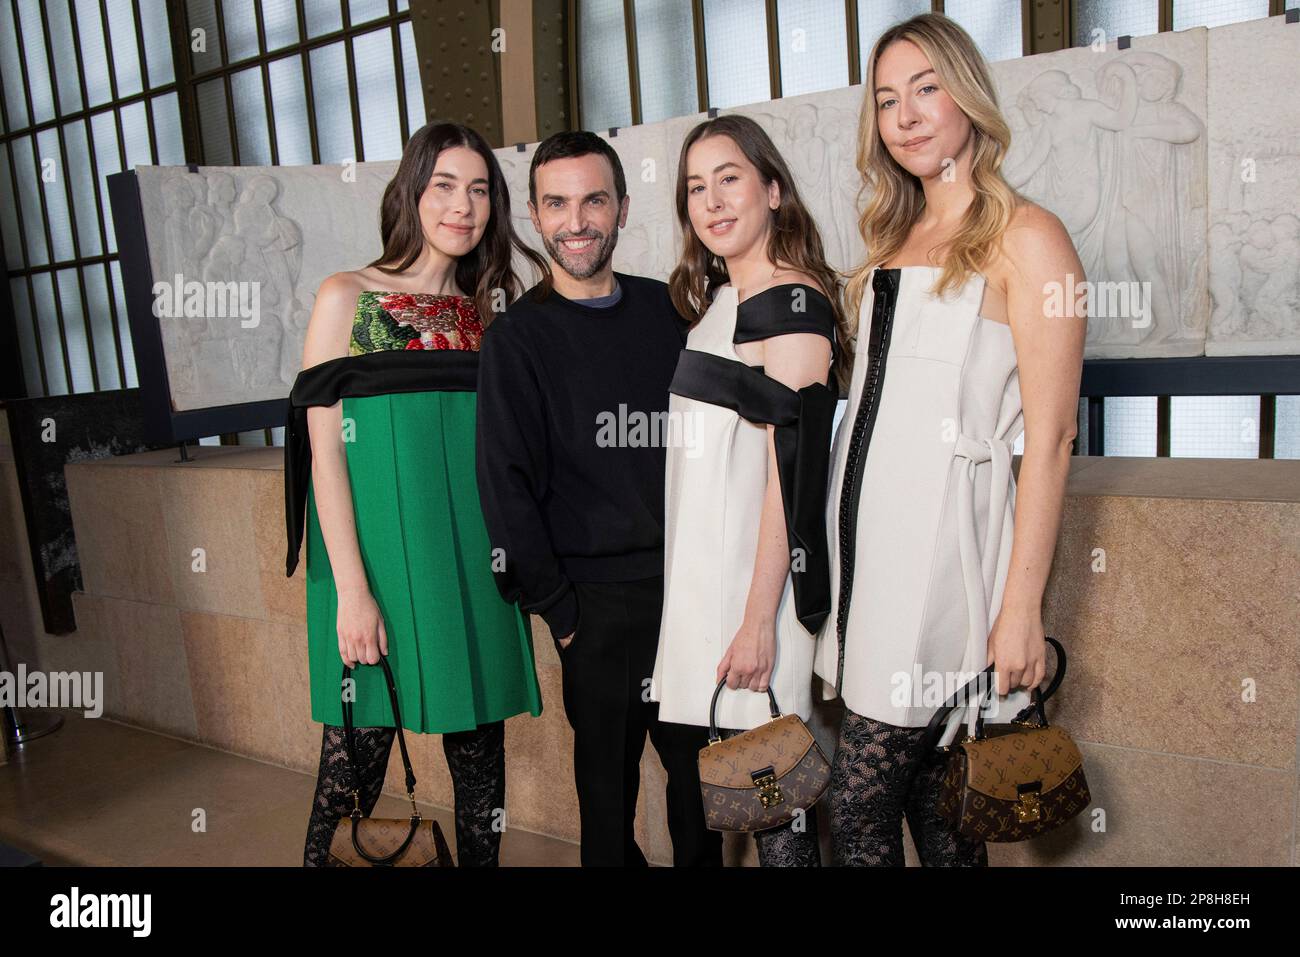 Alana Haim, Danielle Haim, Este Haim and designer Nicolas